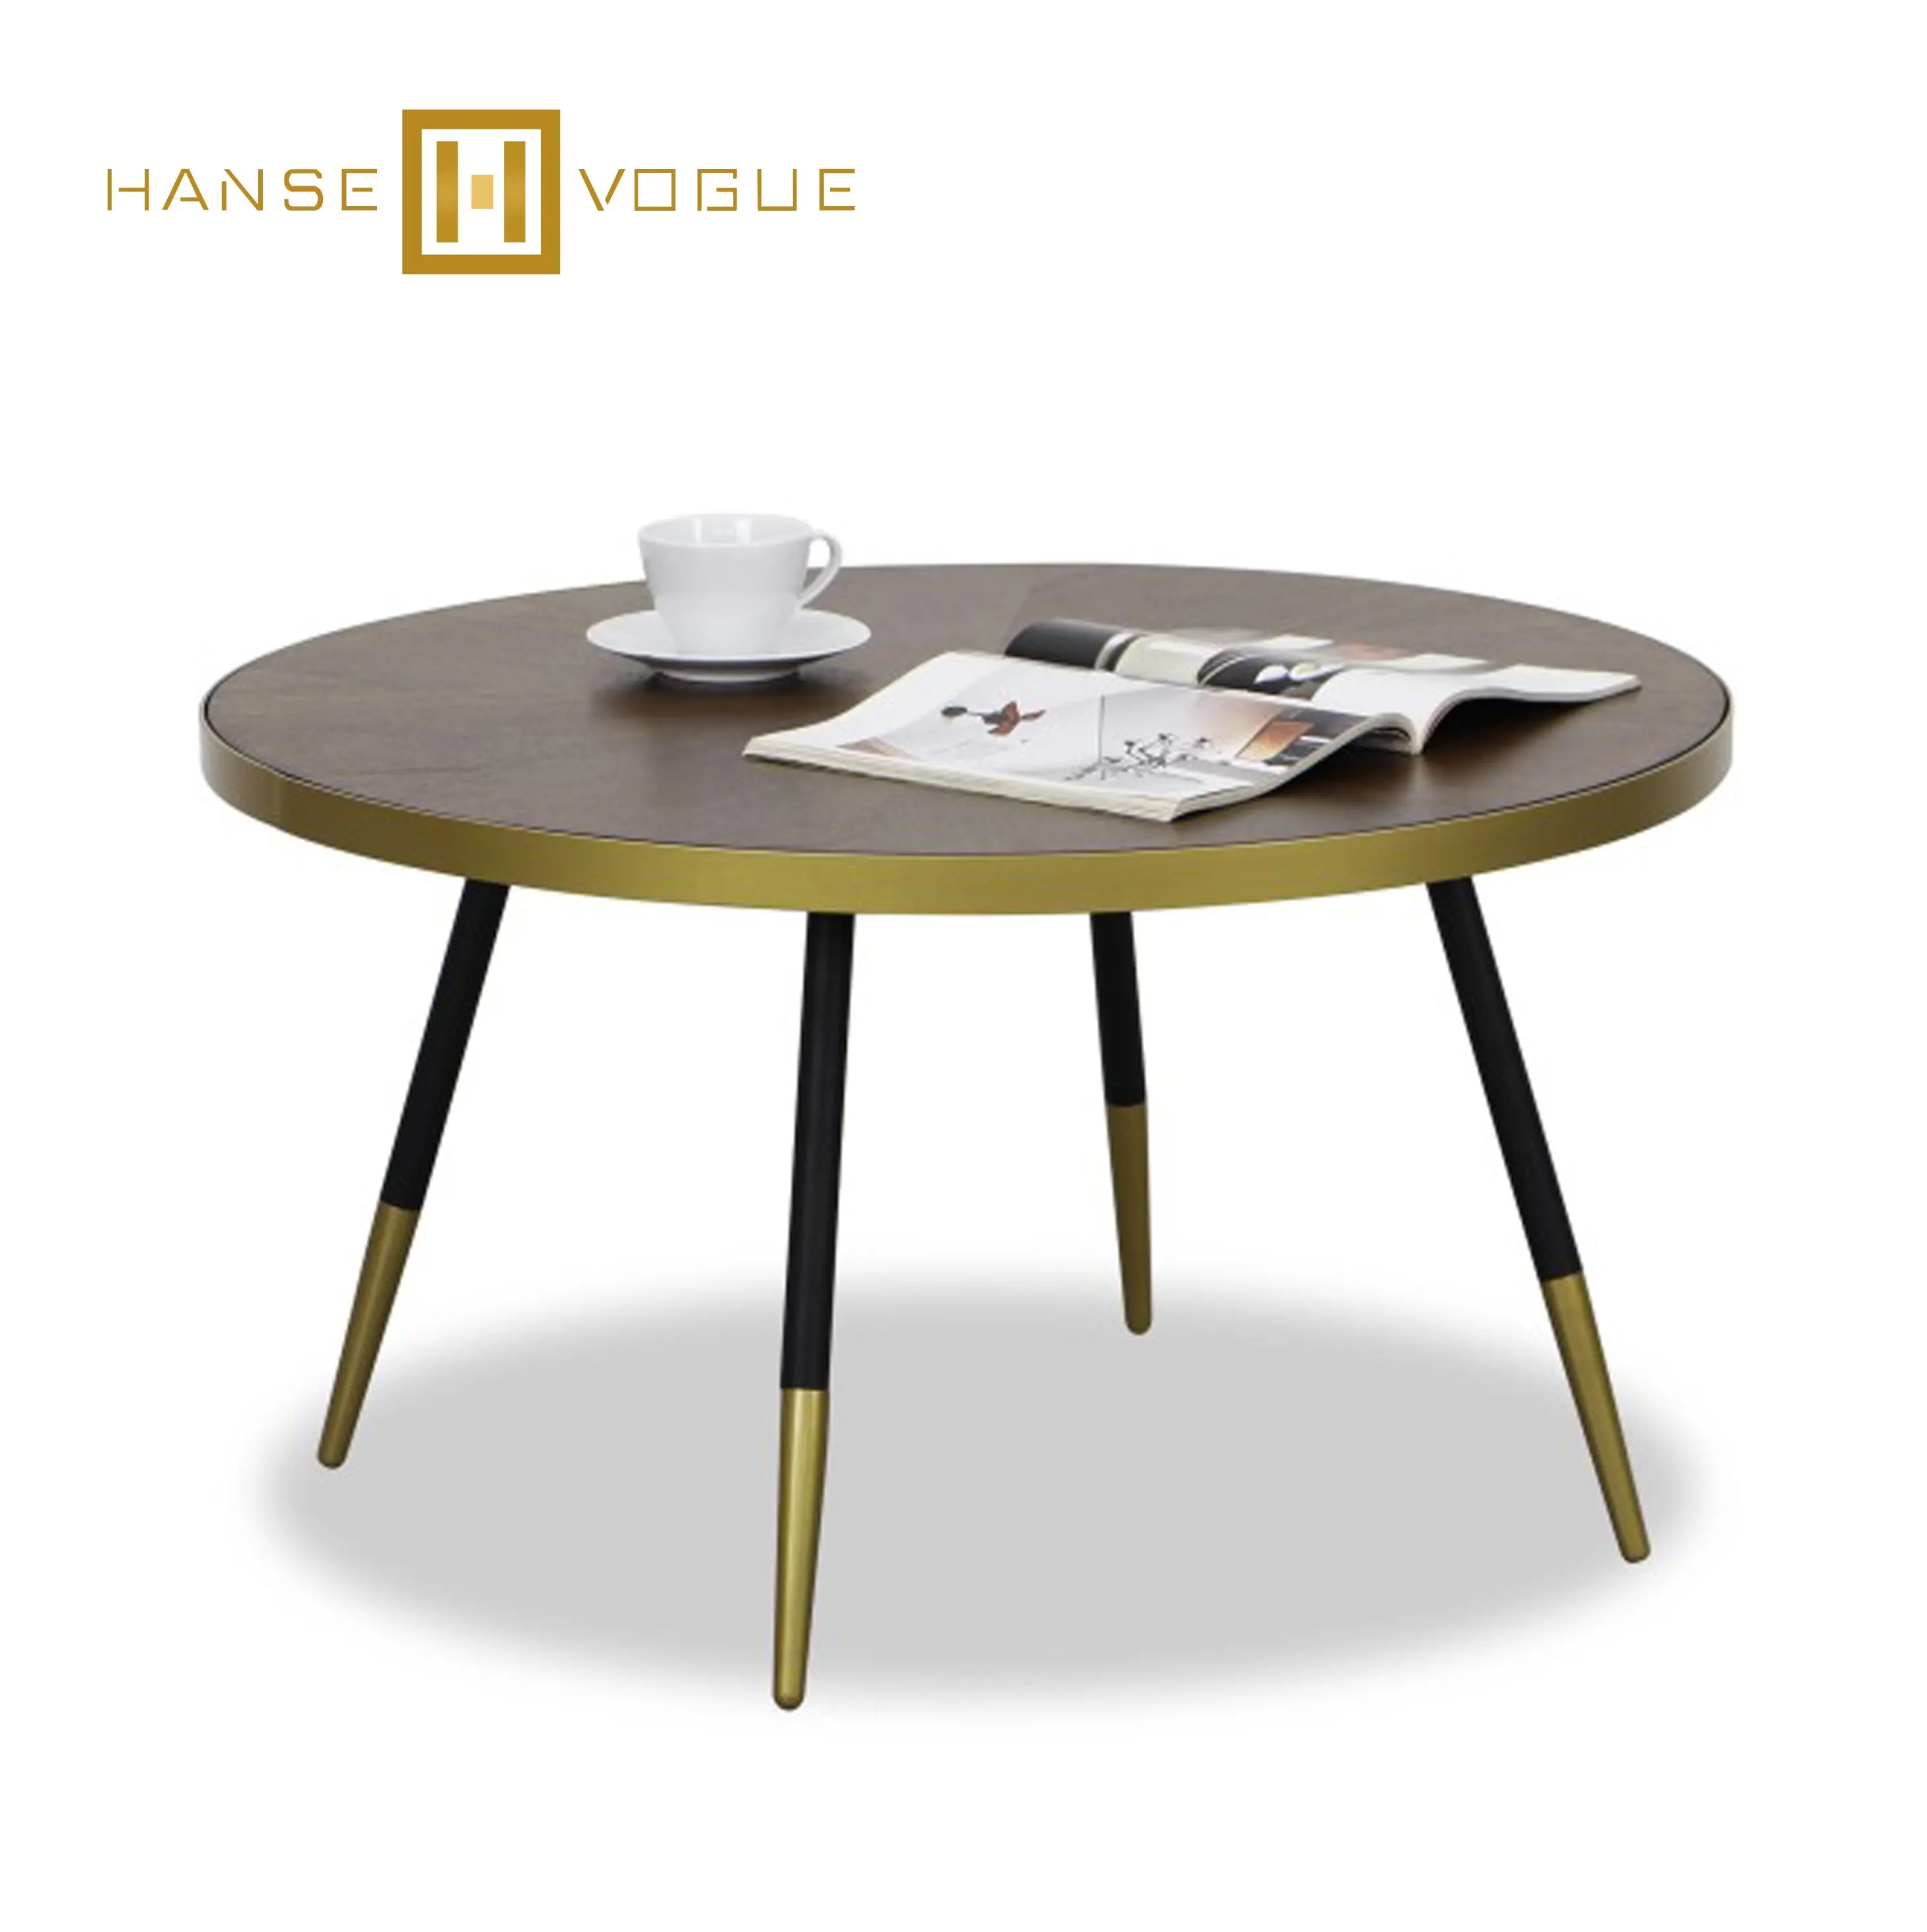 Moderne Runde Nussbaum mdf mit Furnier Finish Metall Pulver-beschichtet Messing Finish Rahmen und Bein Kaffee Tisch